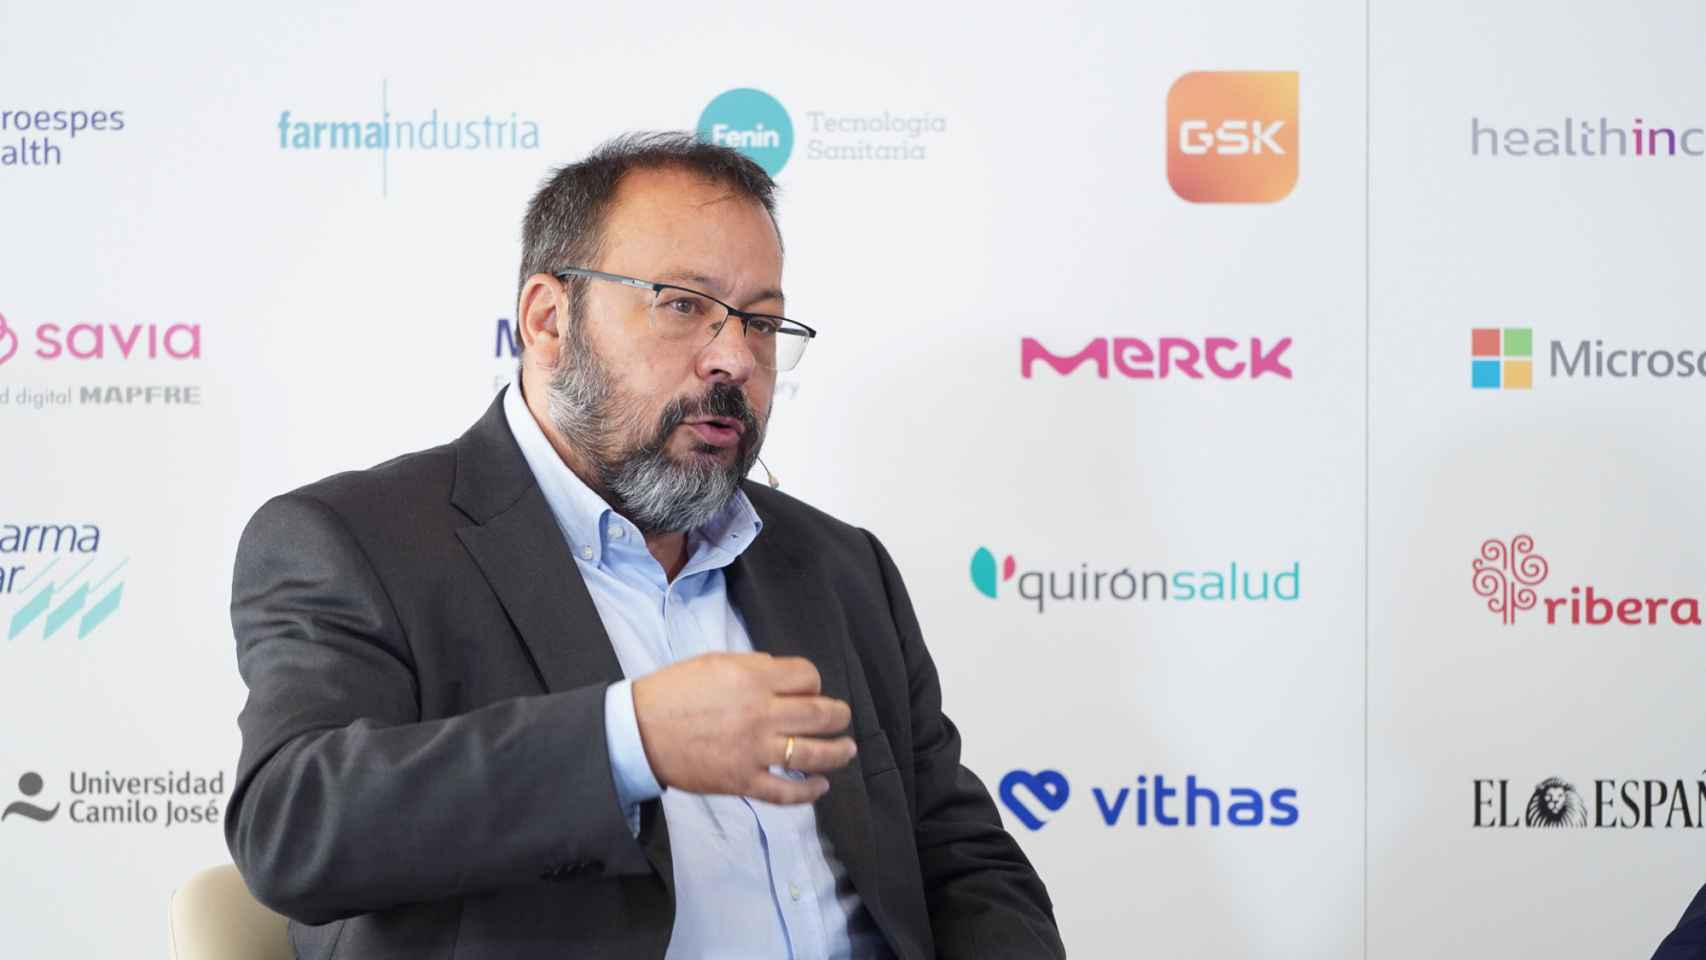 César Hernández, director general de la Cartera Común de Servicios del Sistema Nacional de Salud (SNS) y Farmacia del Ministerio de Sanidad.